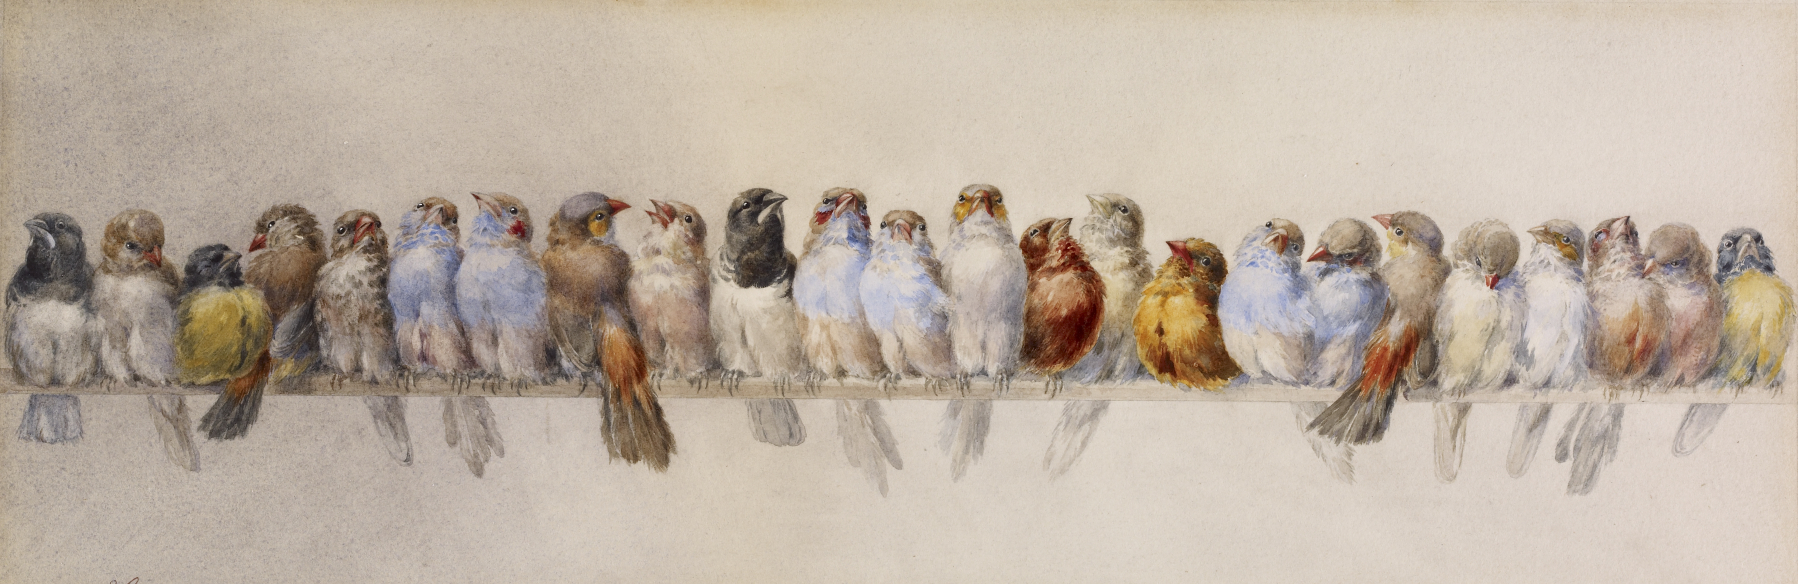 Entre el arte y la ciencia: el valioso rol de acuarela en la ilustración científica de aves analizado a partir de la obra de Hector Giacomelli